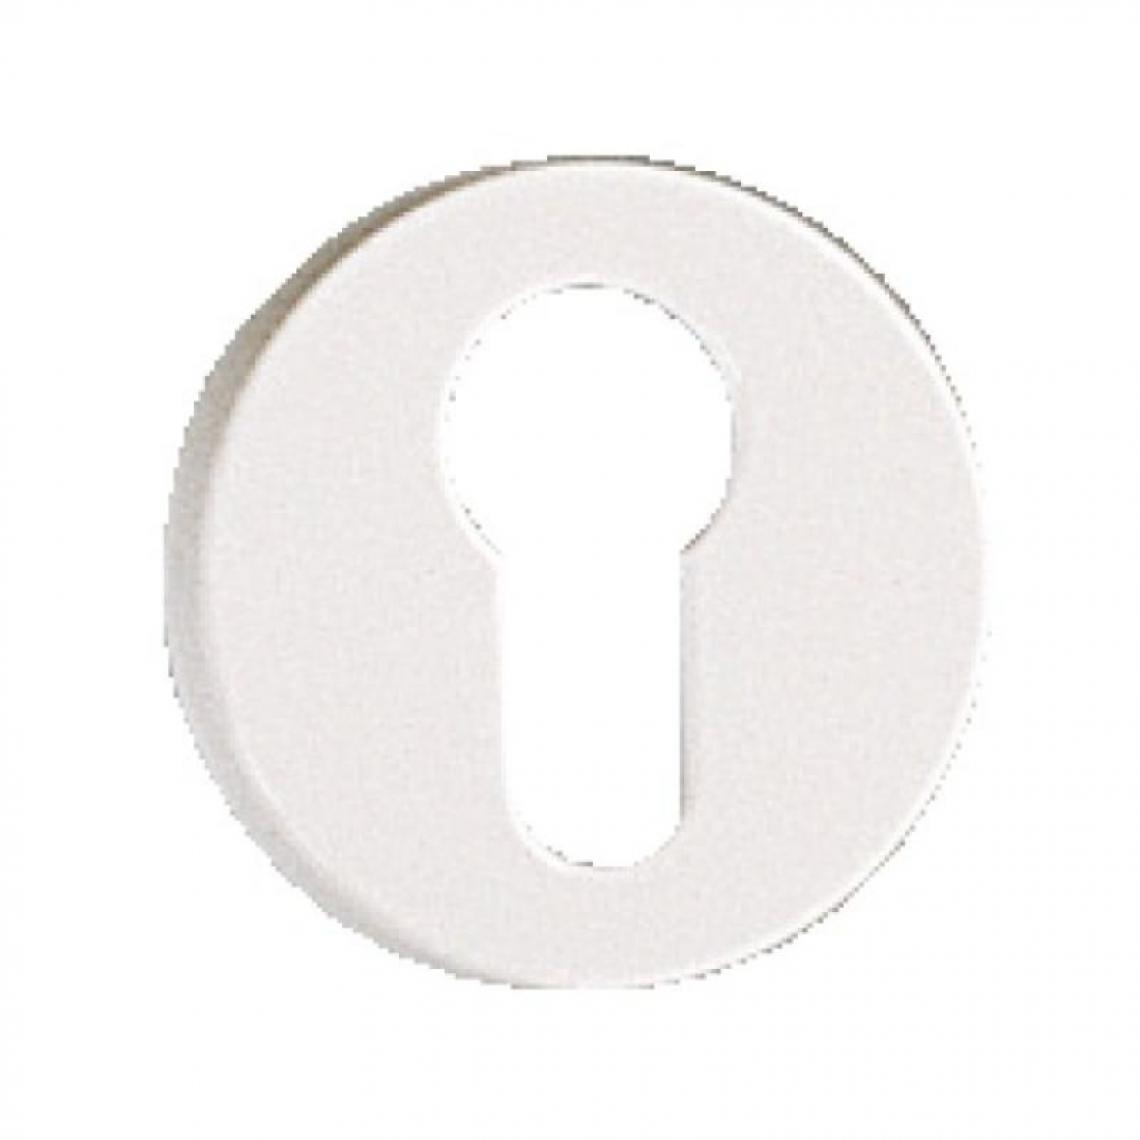 Assa Abloy - Rosace en polyamide blanche - ARCOLOR 7700 - Pour béquille 710 et 232 condamnation avec - Poignée de porte